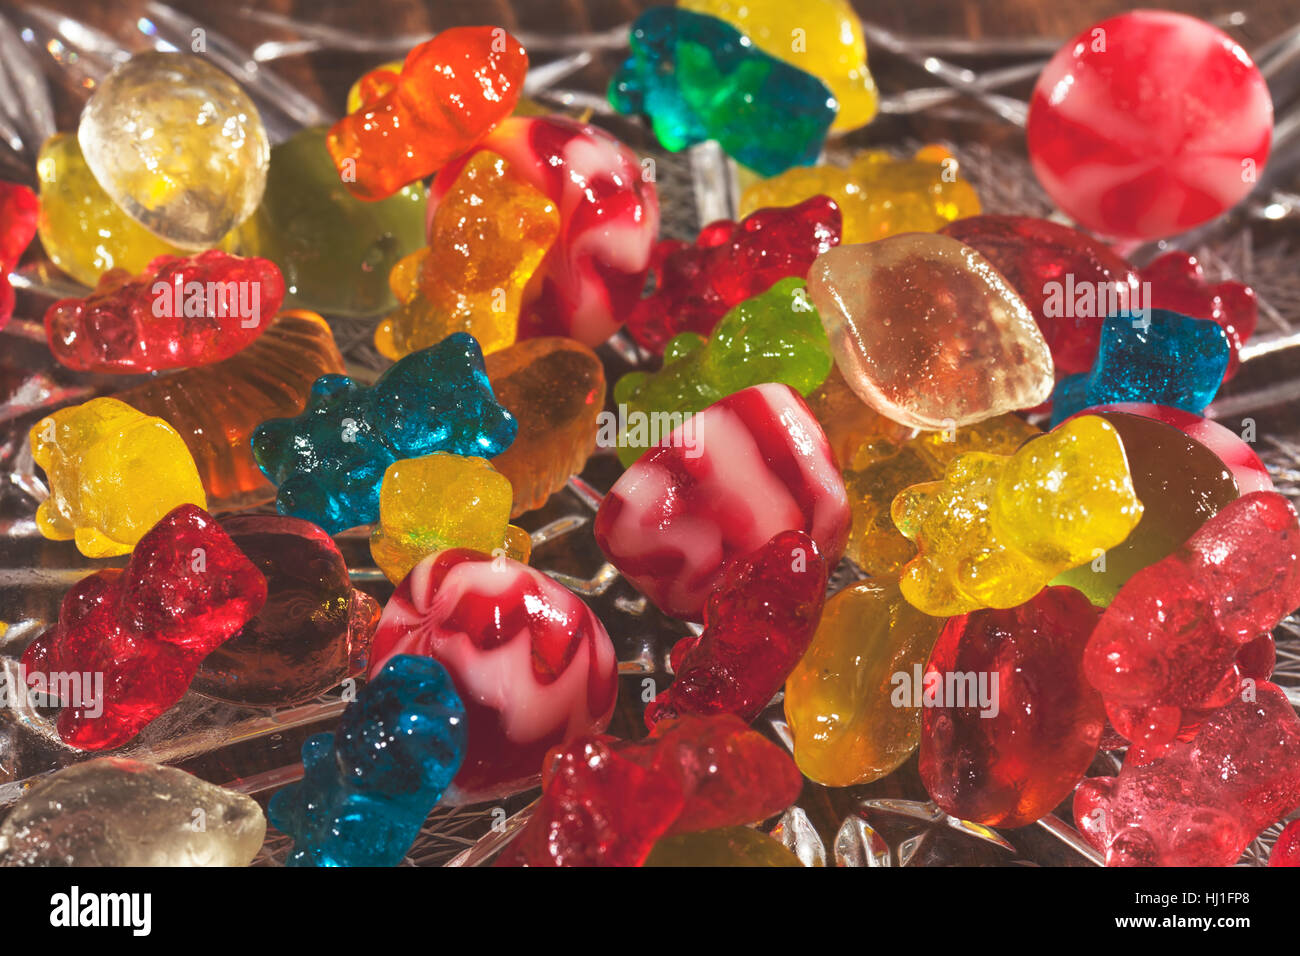 Décoration avec des bonbons en caoutchouc dans un bol en verre décoratif, note faible profondeur de champ Banque D'Images